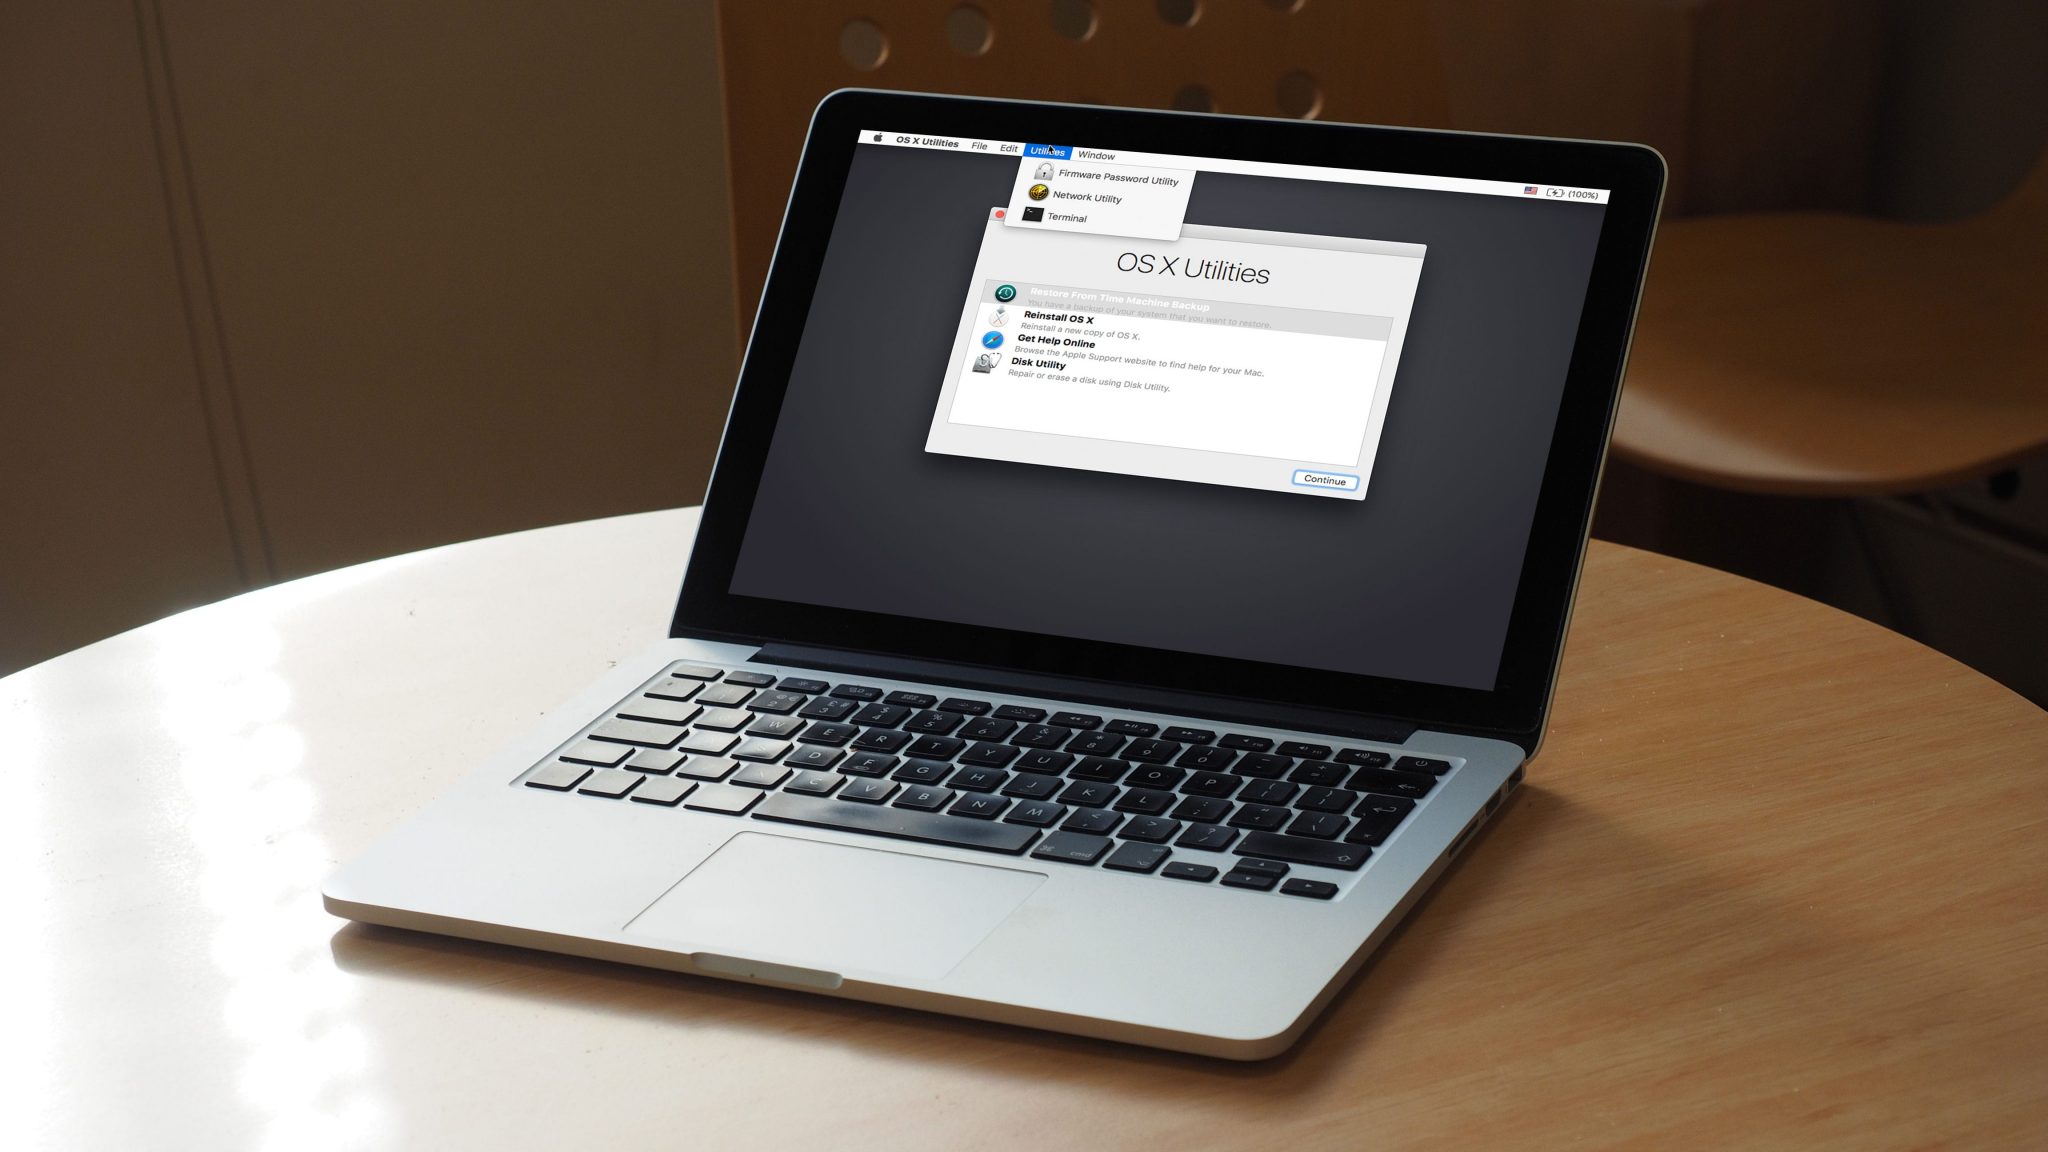 reboot macbook pro in safe mode